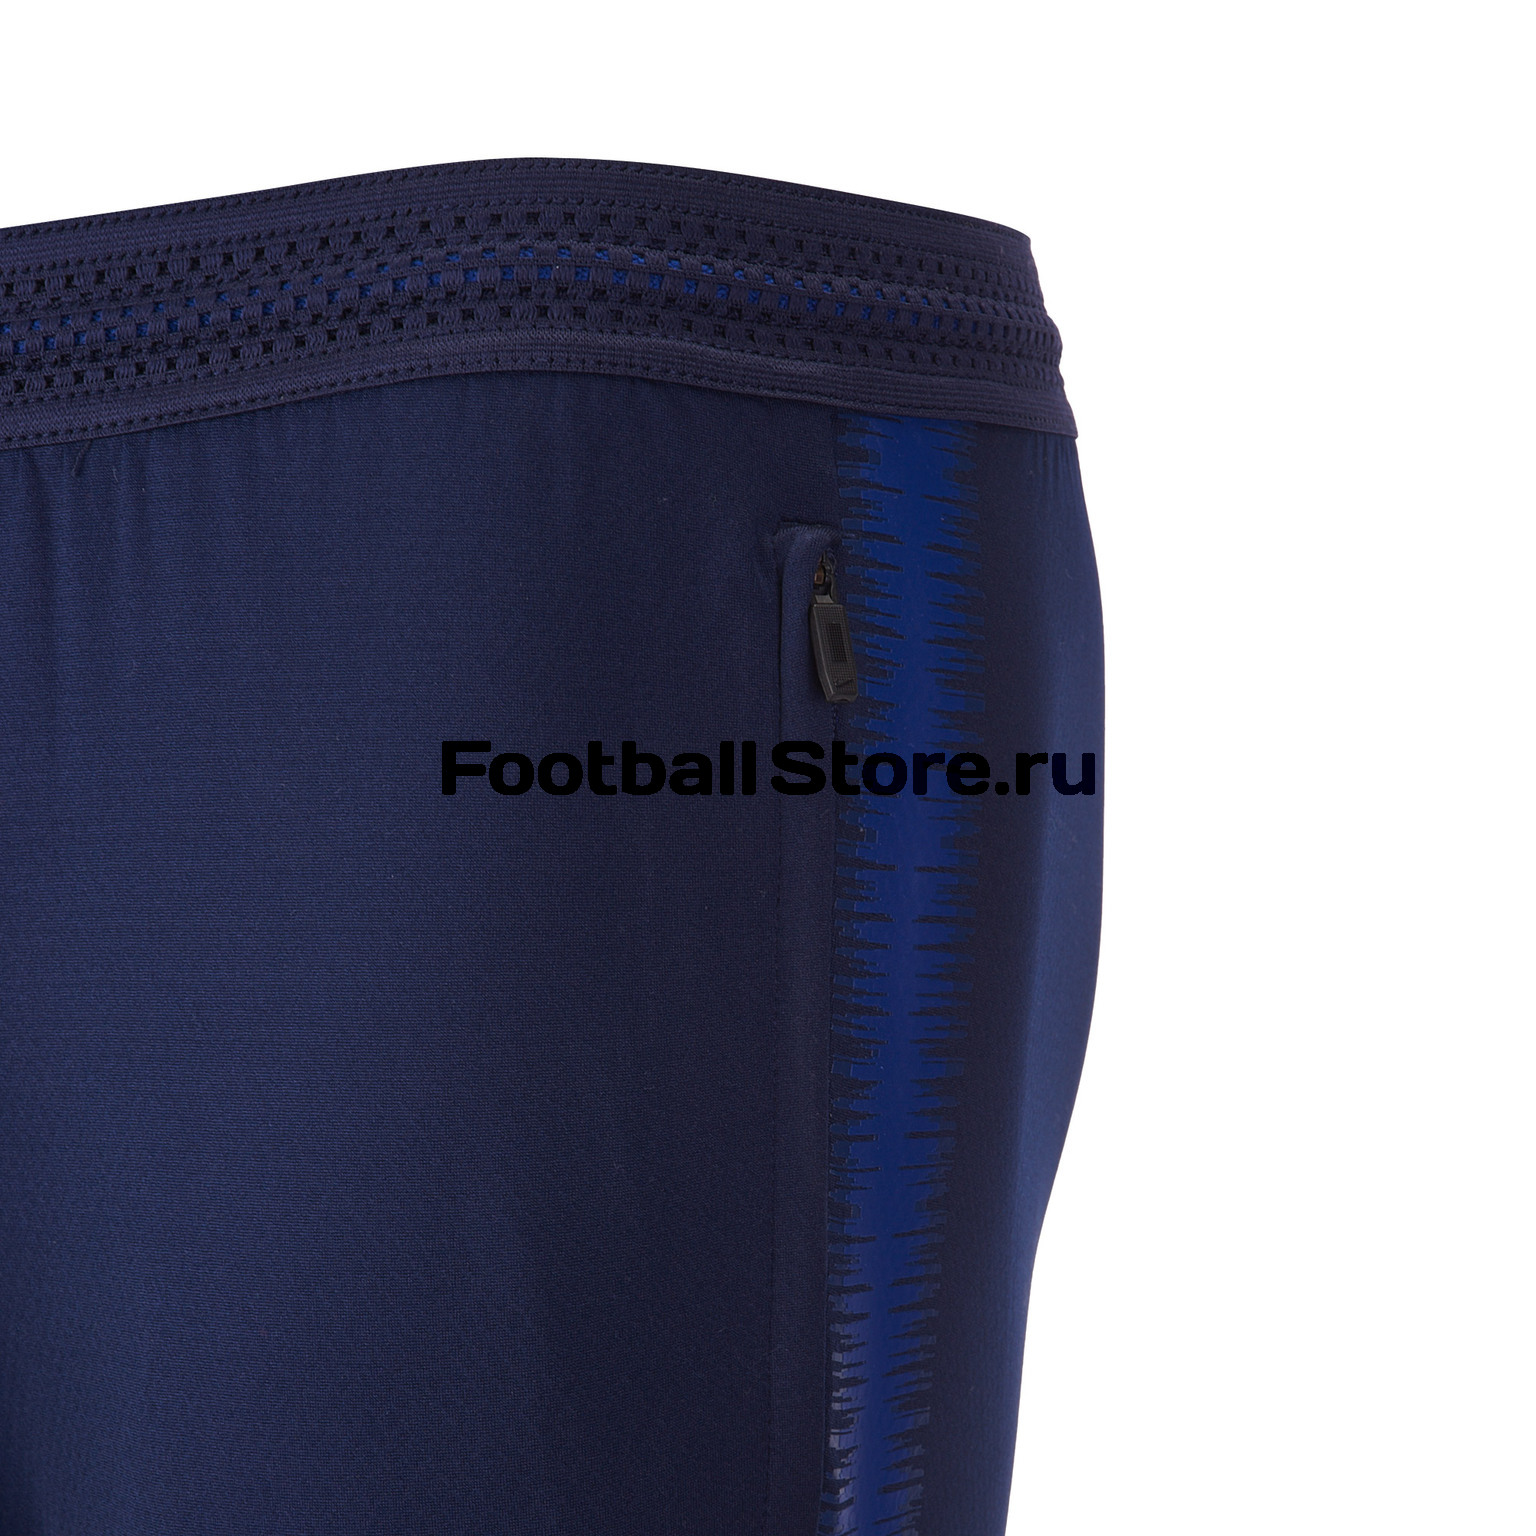 Брюки тренировочные Nike Strike Flex Football Pants 902586-416